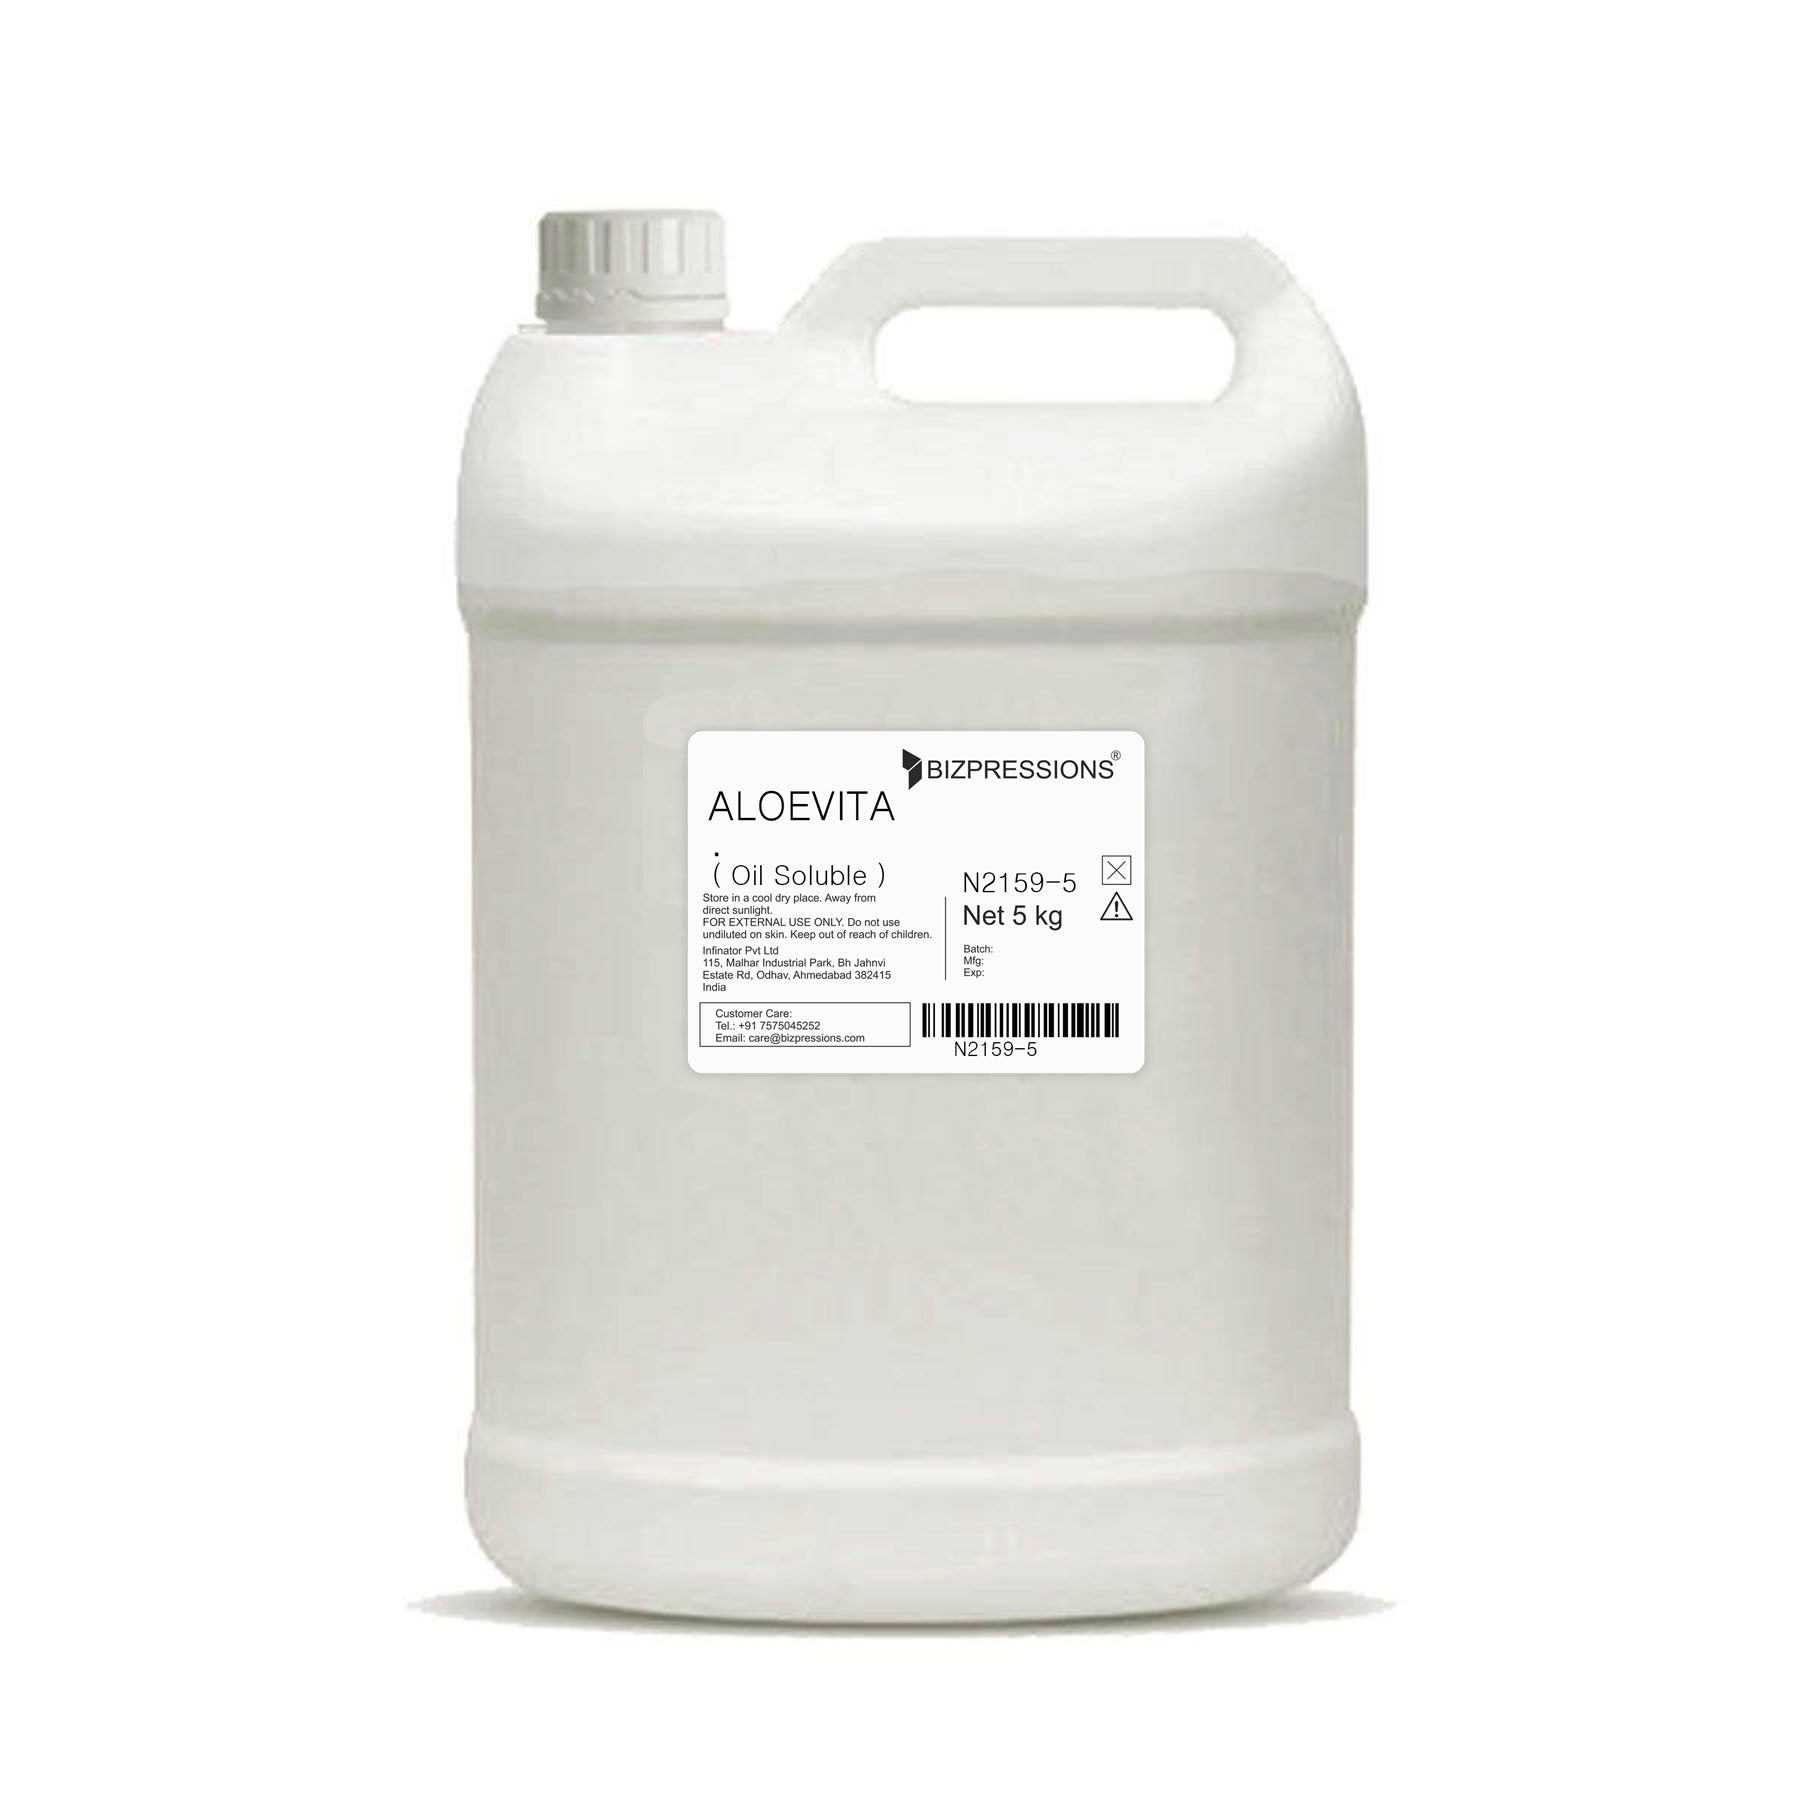 ALOEVITA - Fragrance ( Oil Soluble ) - 5 kg